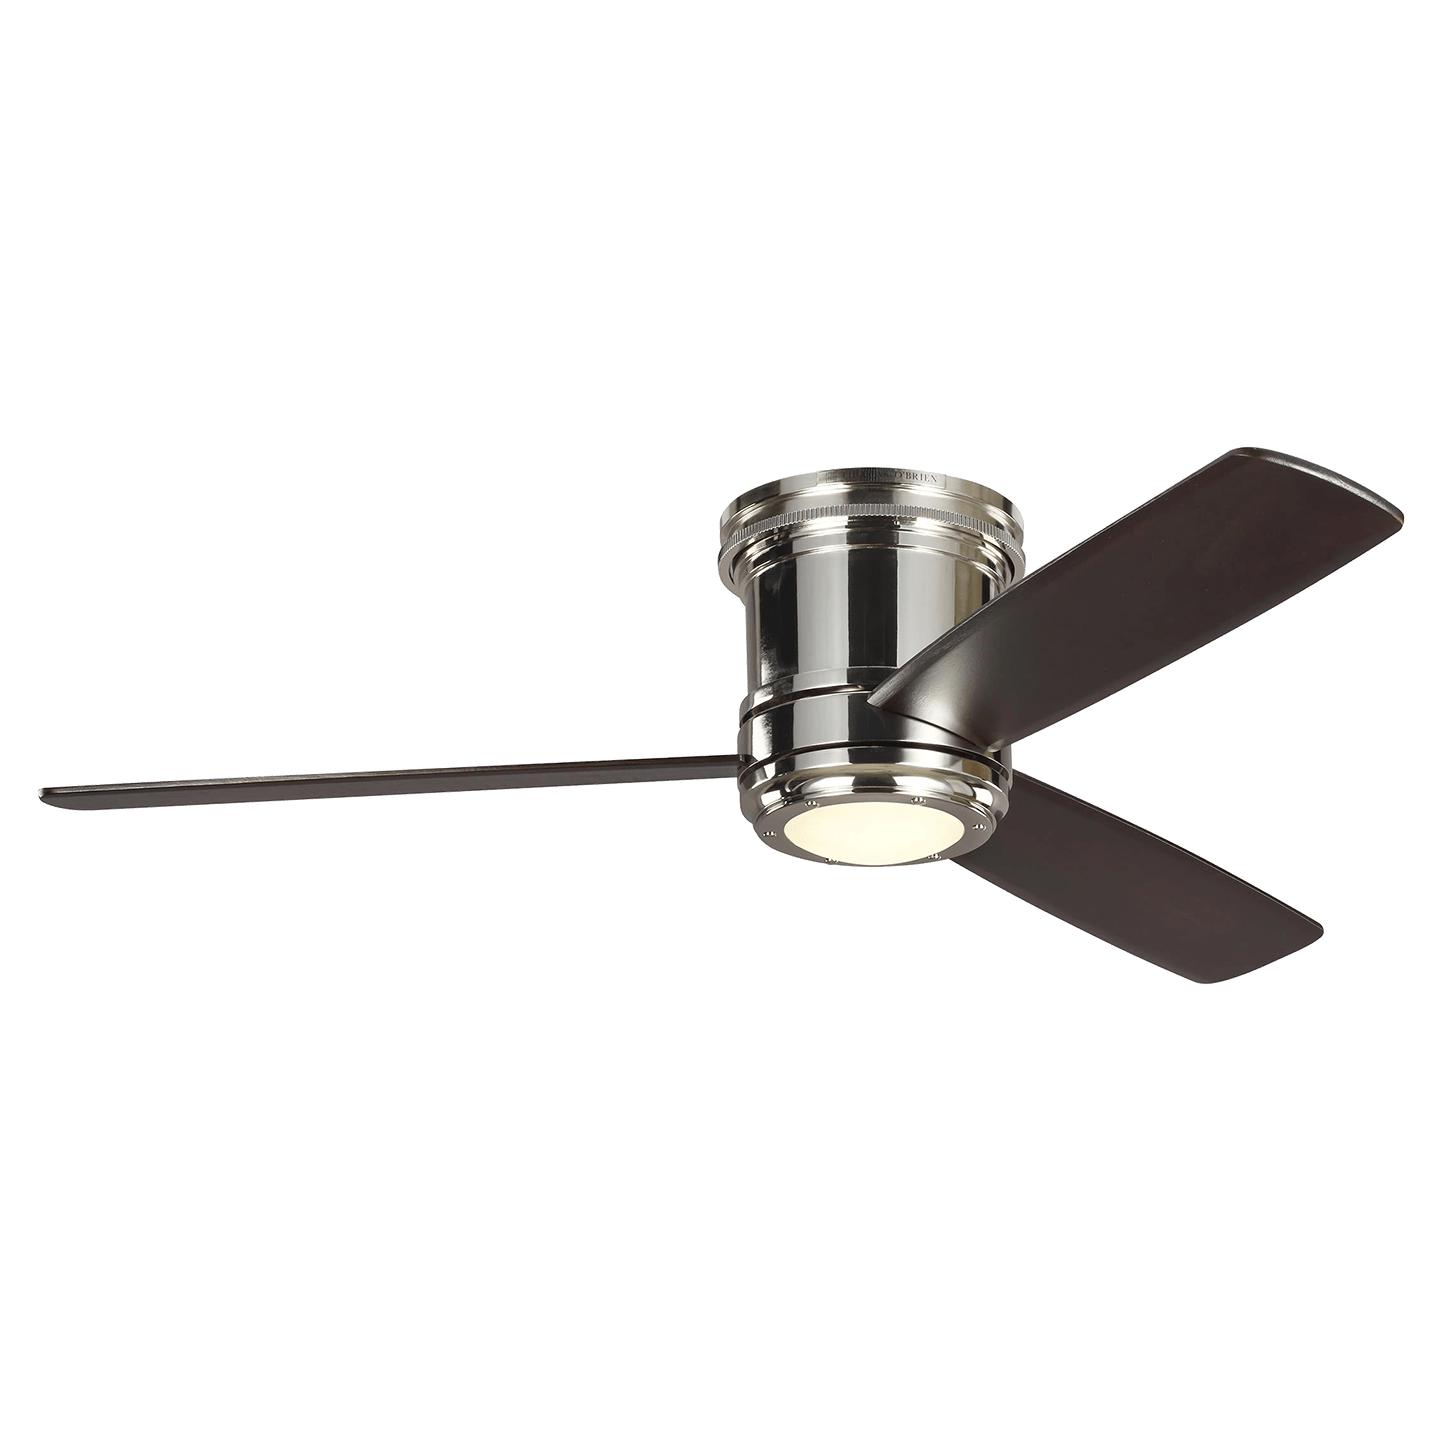 Купить Потолочный вентилятор Aerotour 56" Semi-Flush Ceiling Fan в интернет-магазине roooms.ru